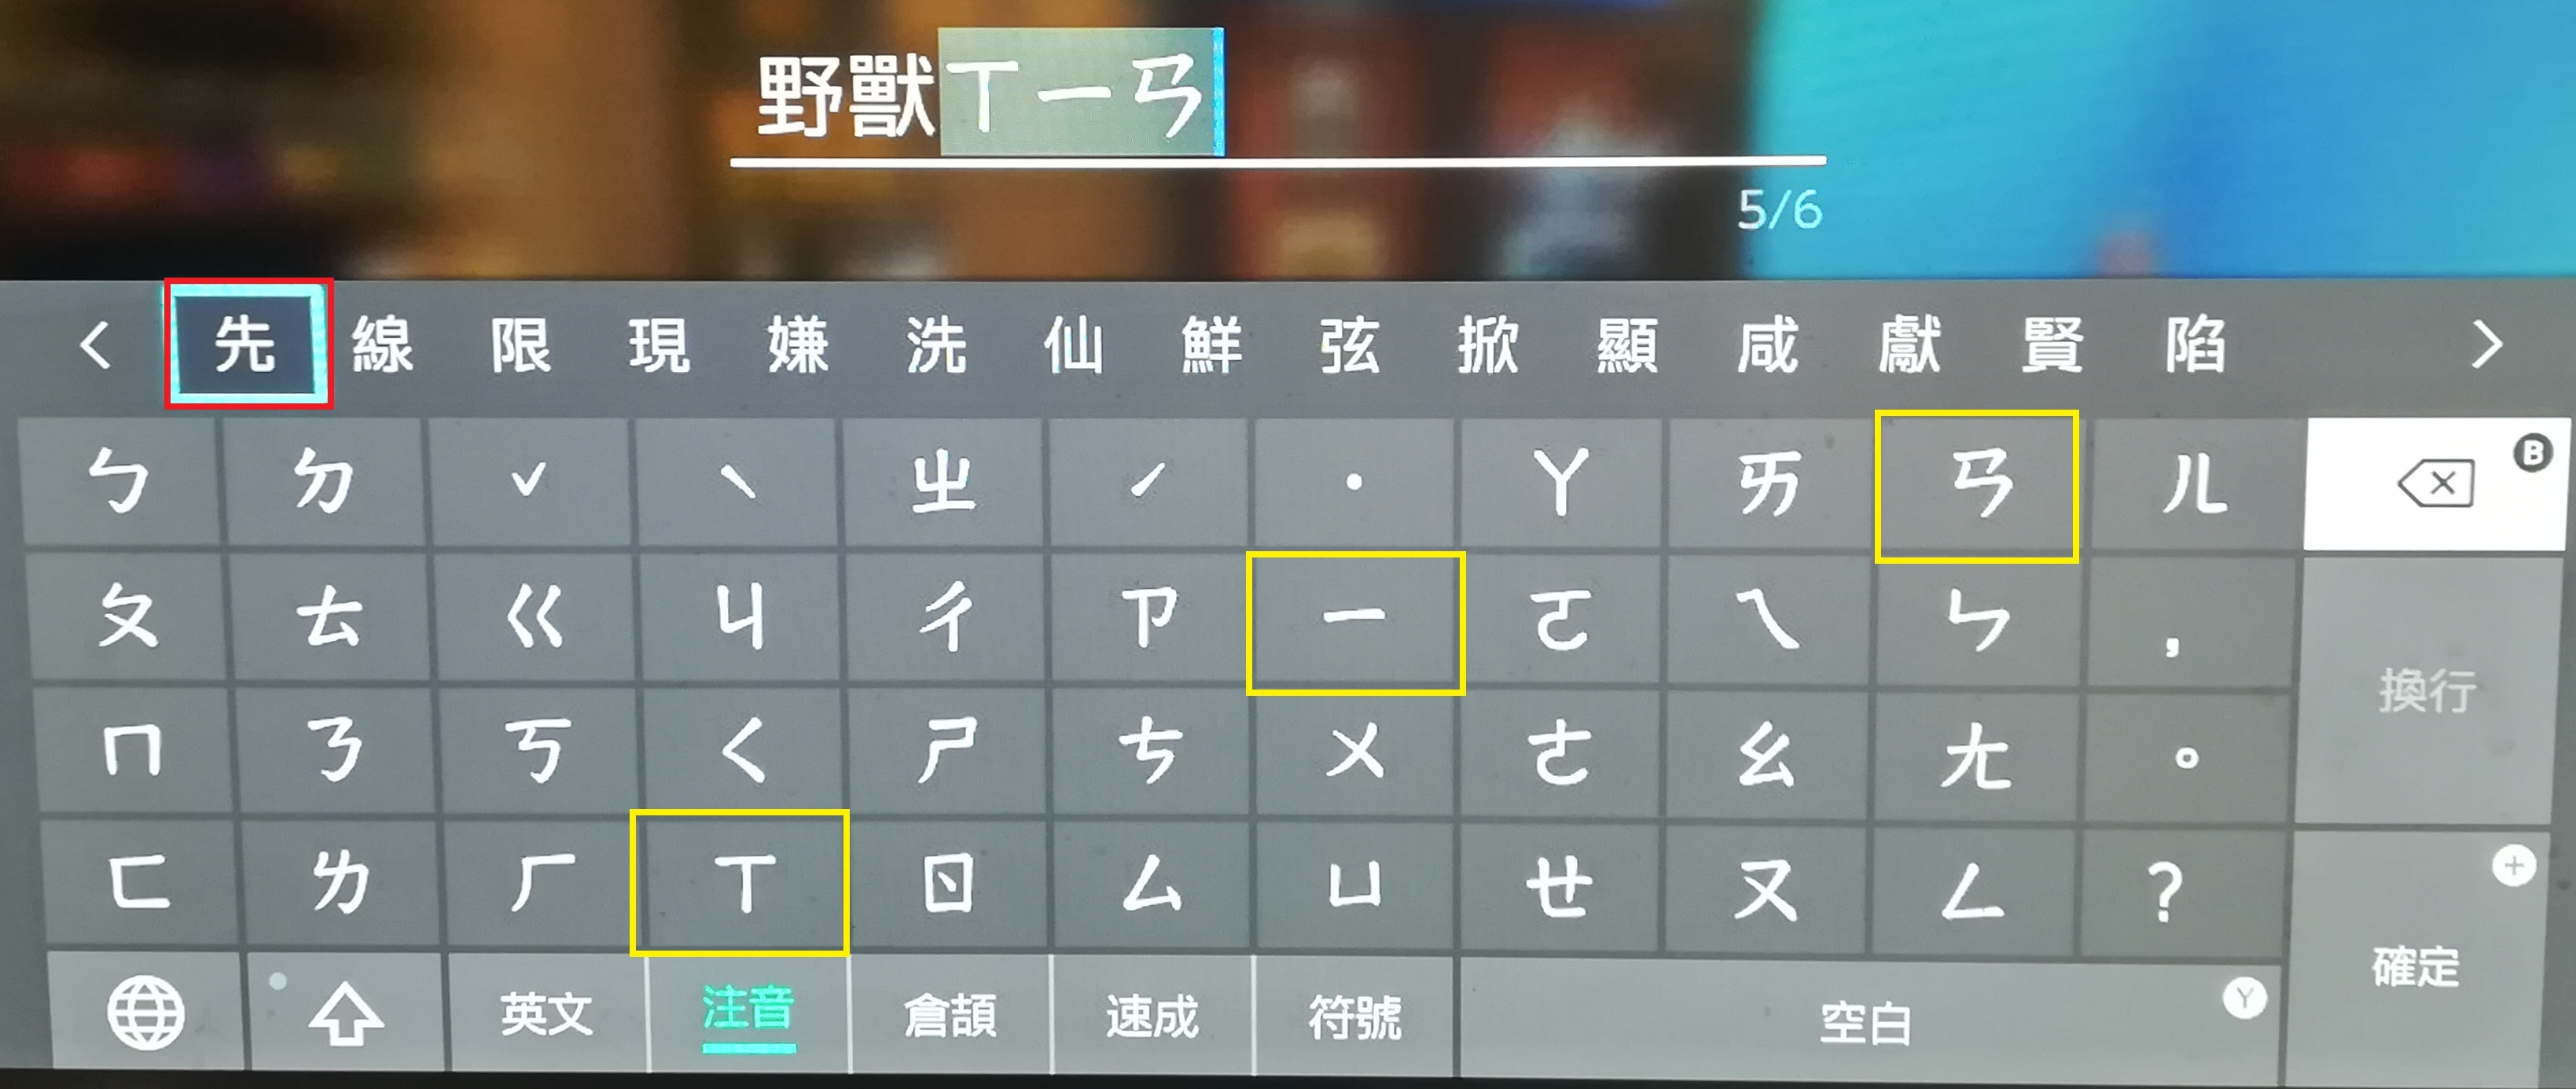 ポケモン剣盾で中国語の漢字ニックネームを付ける方法 繁体字 簡体字 テトリスの海外旅行